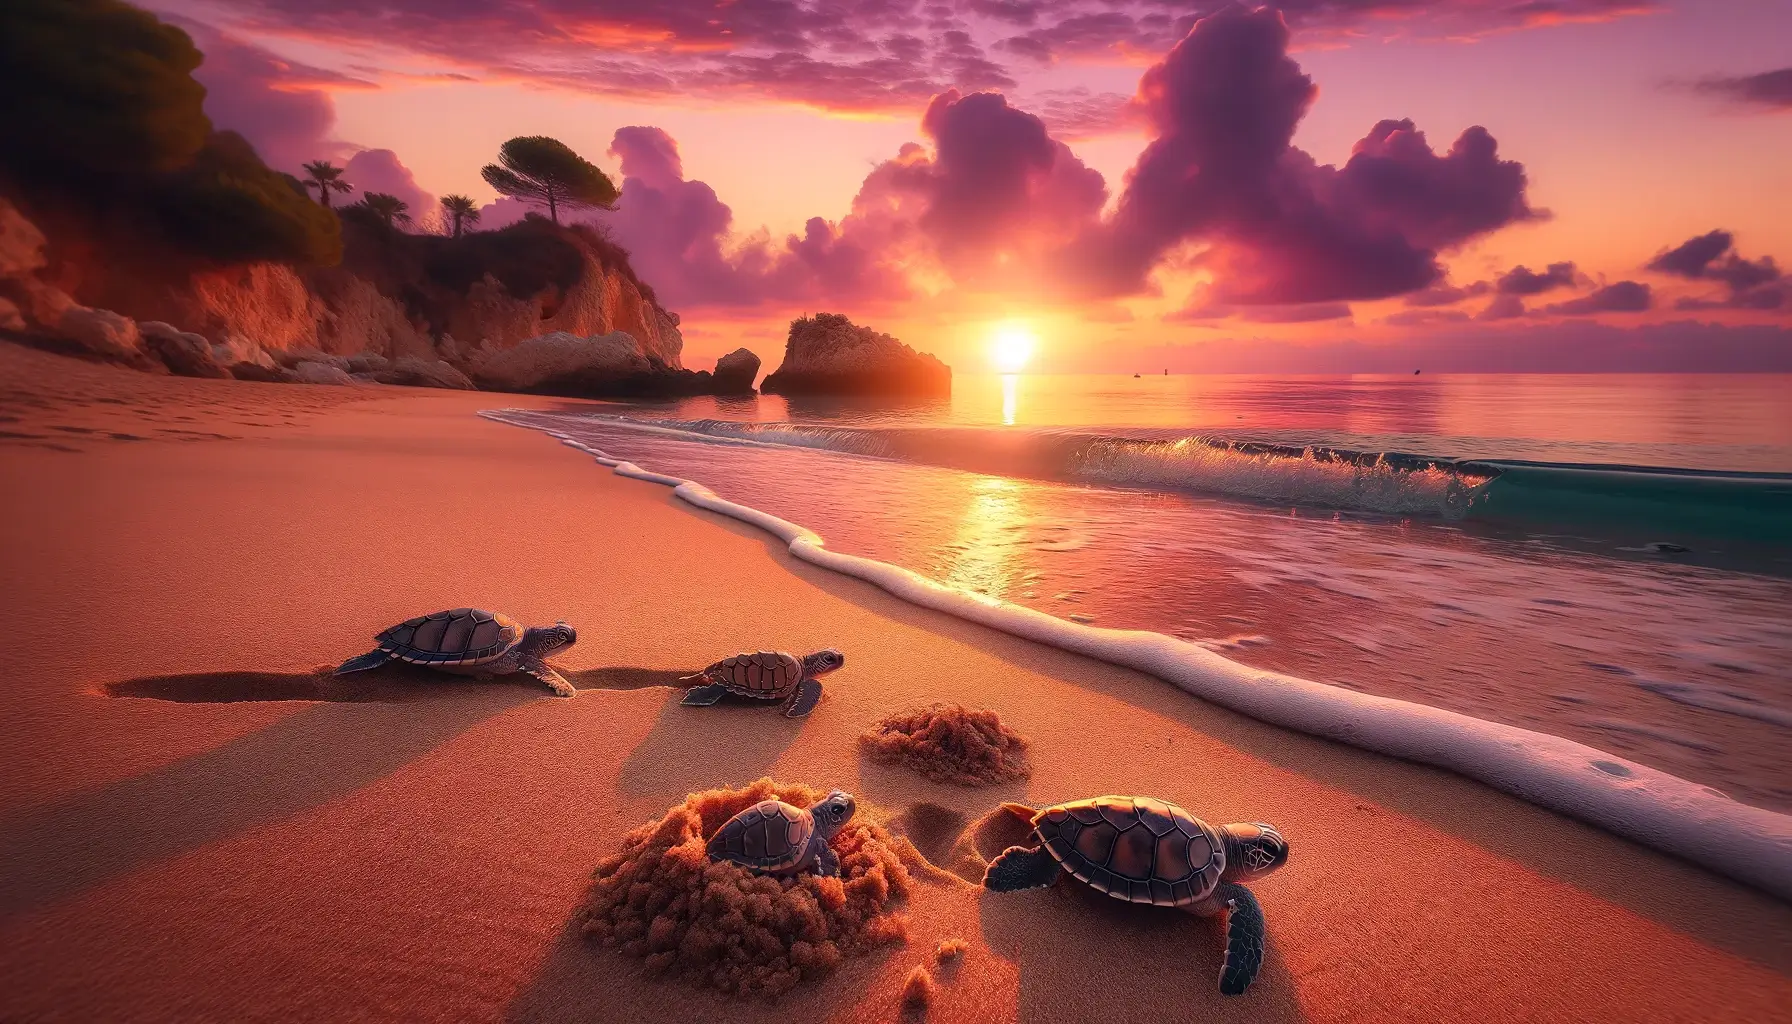 изображениt турецкого пляжа на рассвете с милыми черепашками